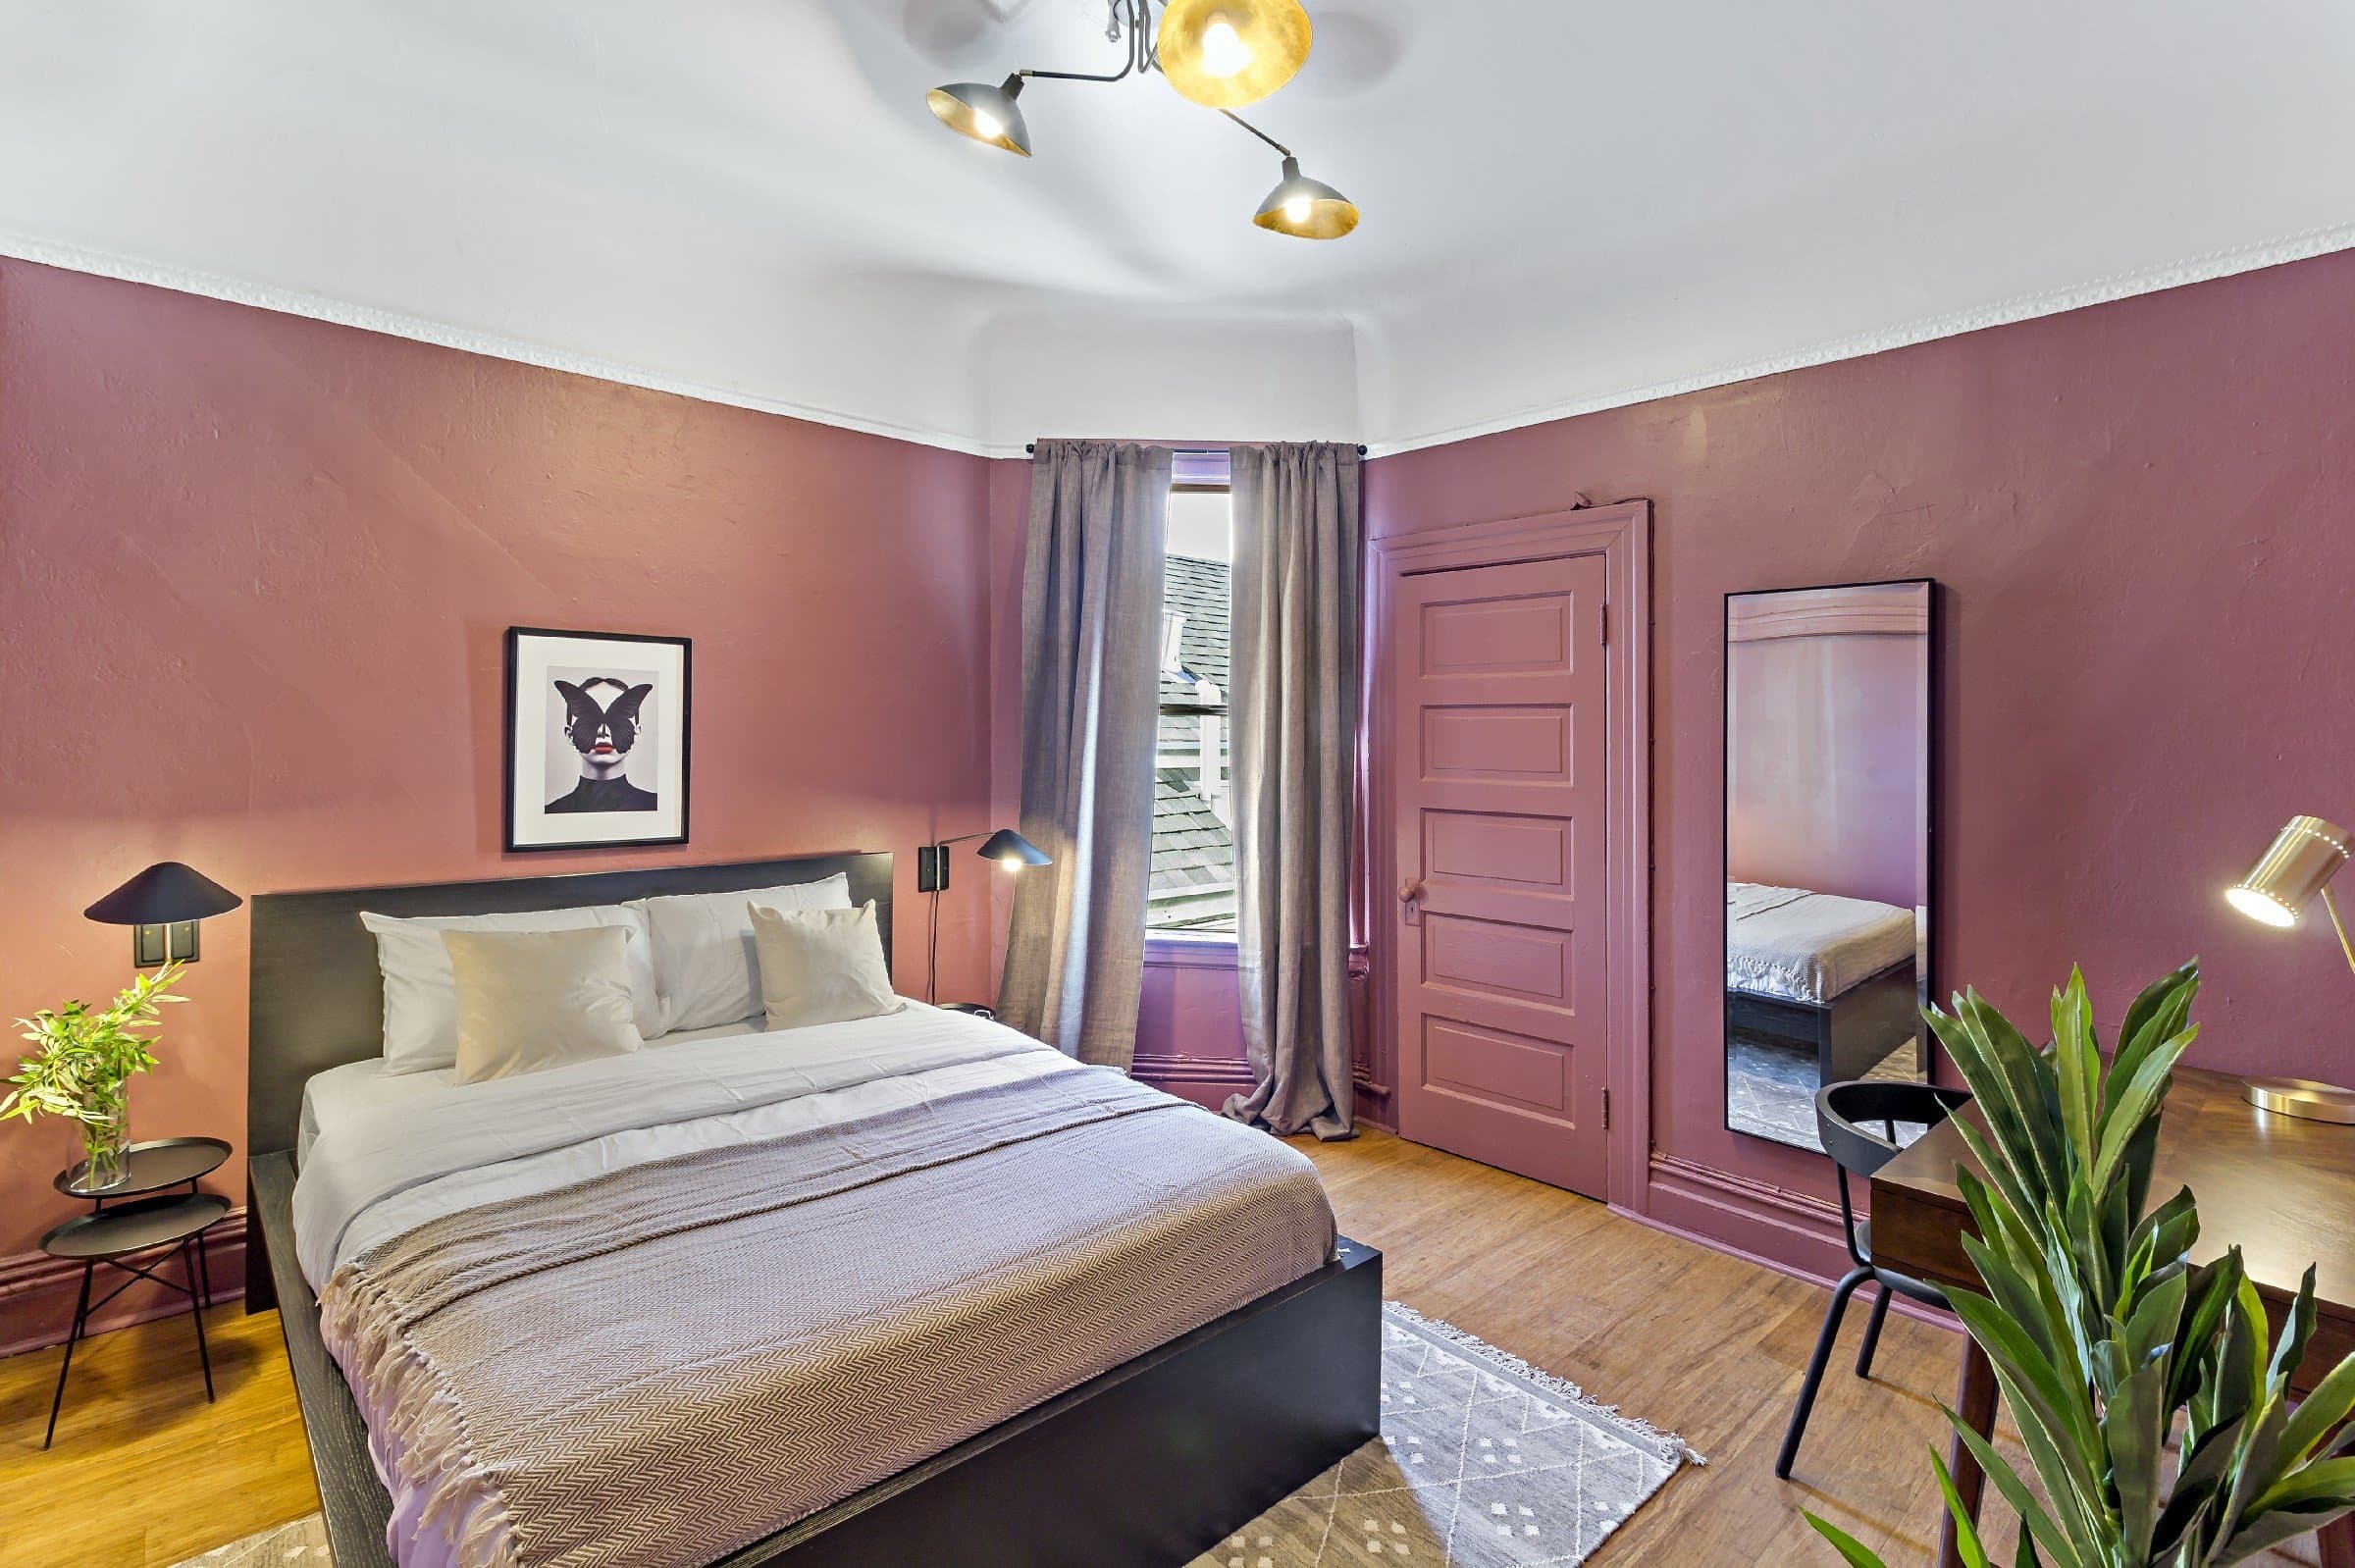 Photo 1 of #902: Queen Bedroom B at June Homes